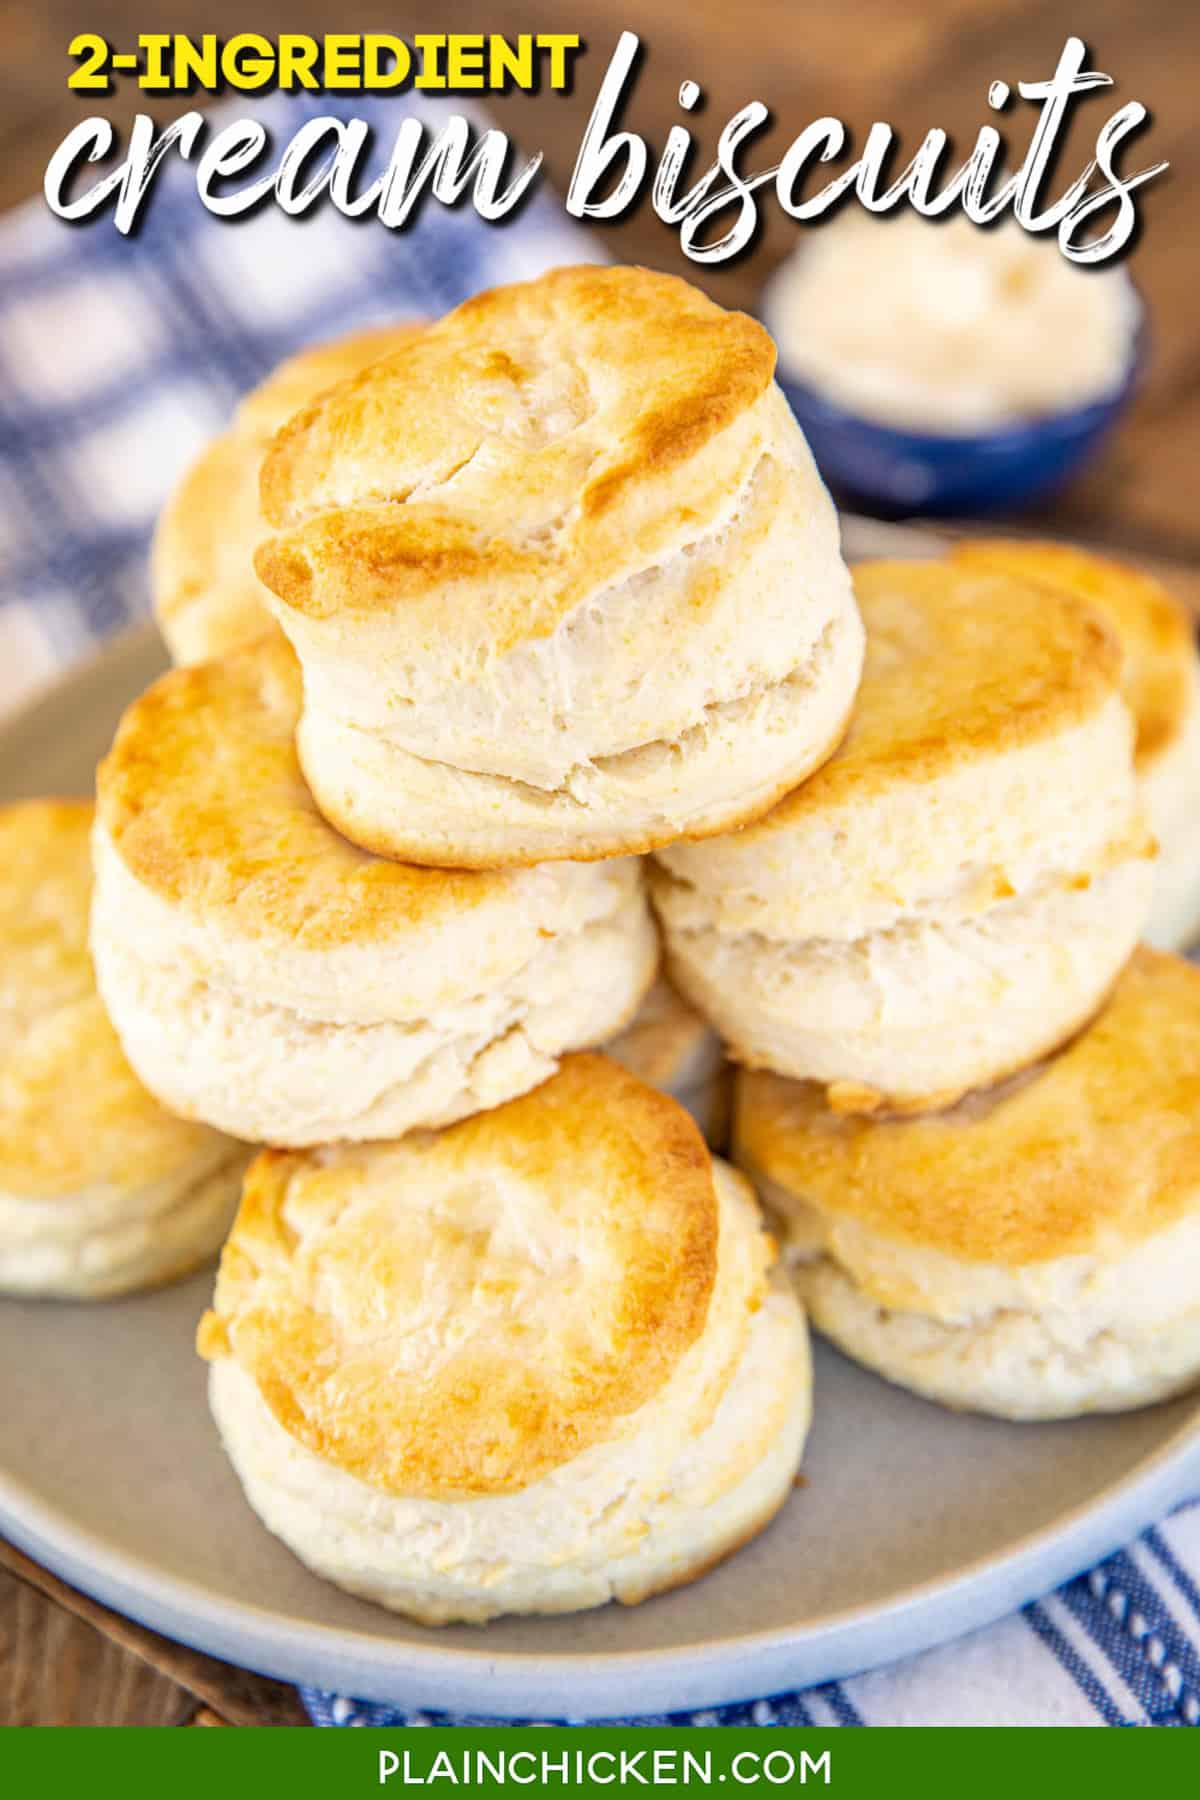 https://www.plainchicken.com/wp-content/uploads/2021/03/2-ingredient-cream-biscuits-2.jpg